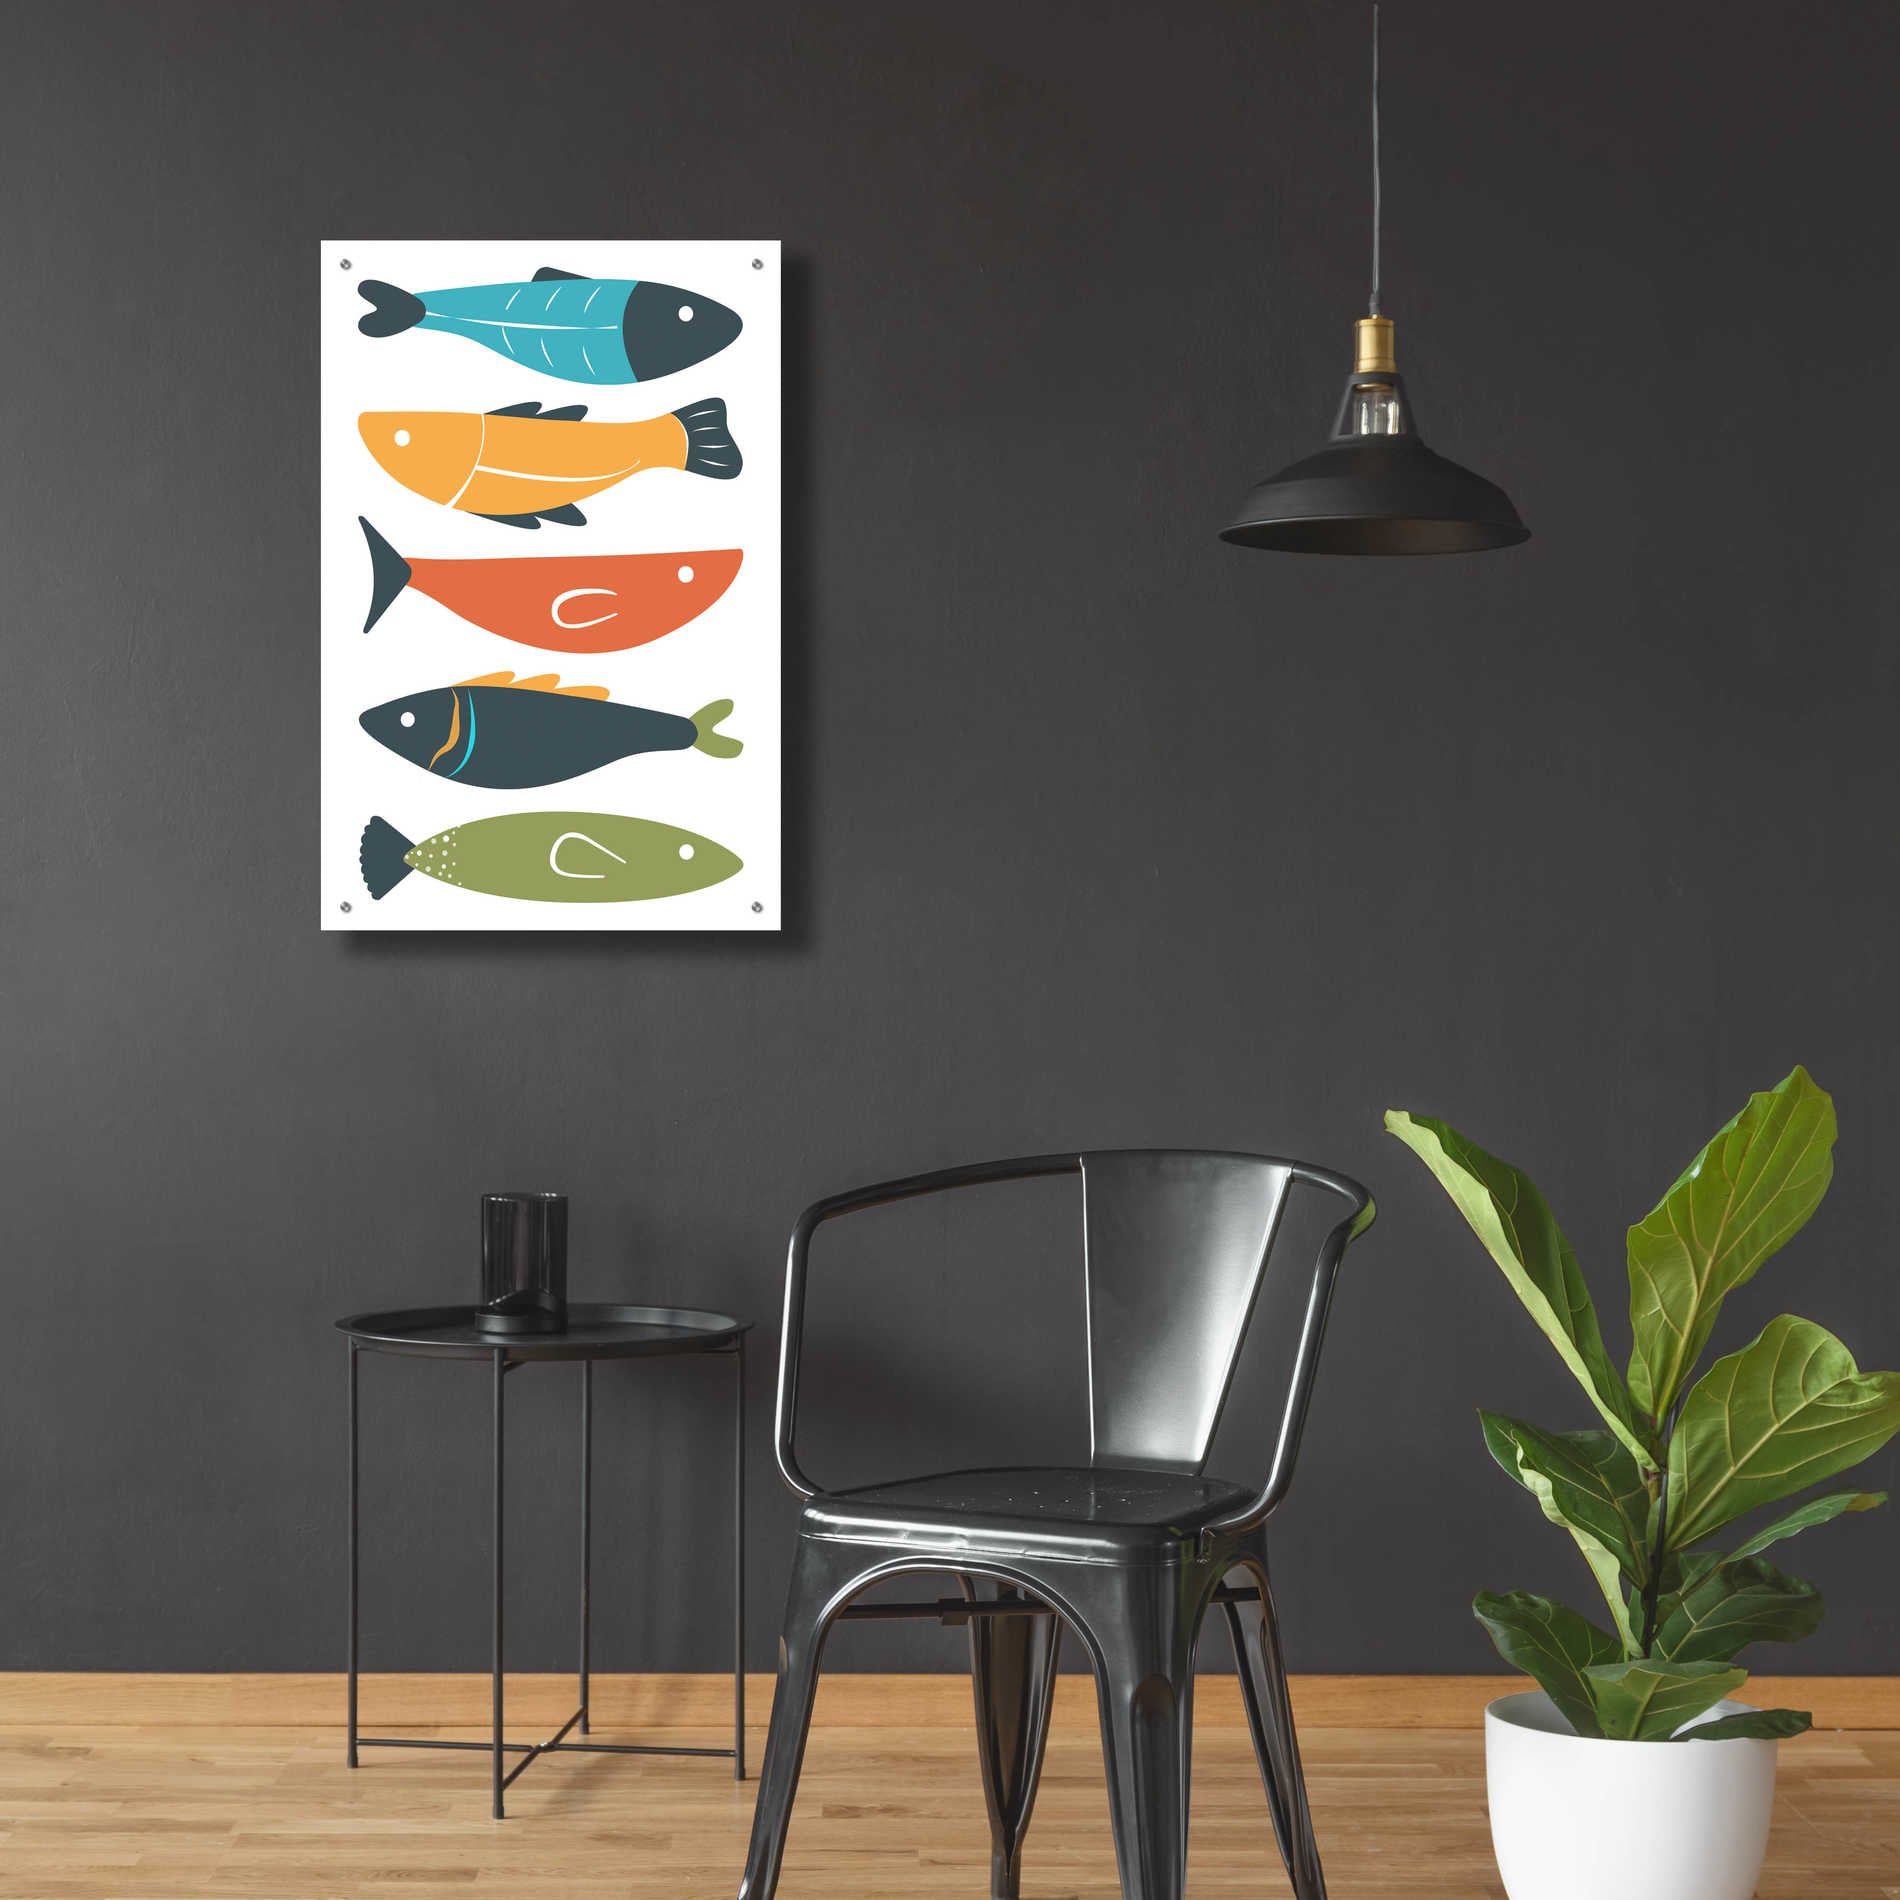 Epic Art 'Playful Fish' by Ayse, Acrylic Glass Wall Art,24x36